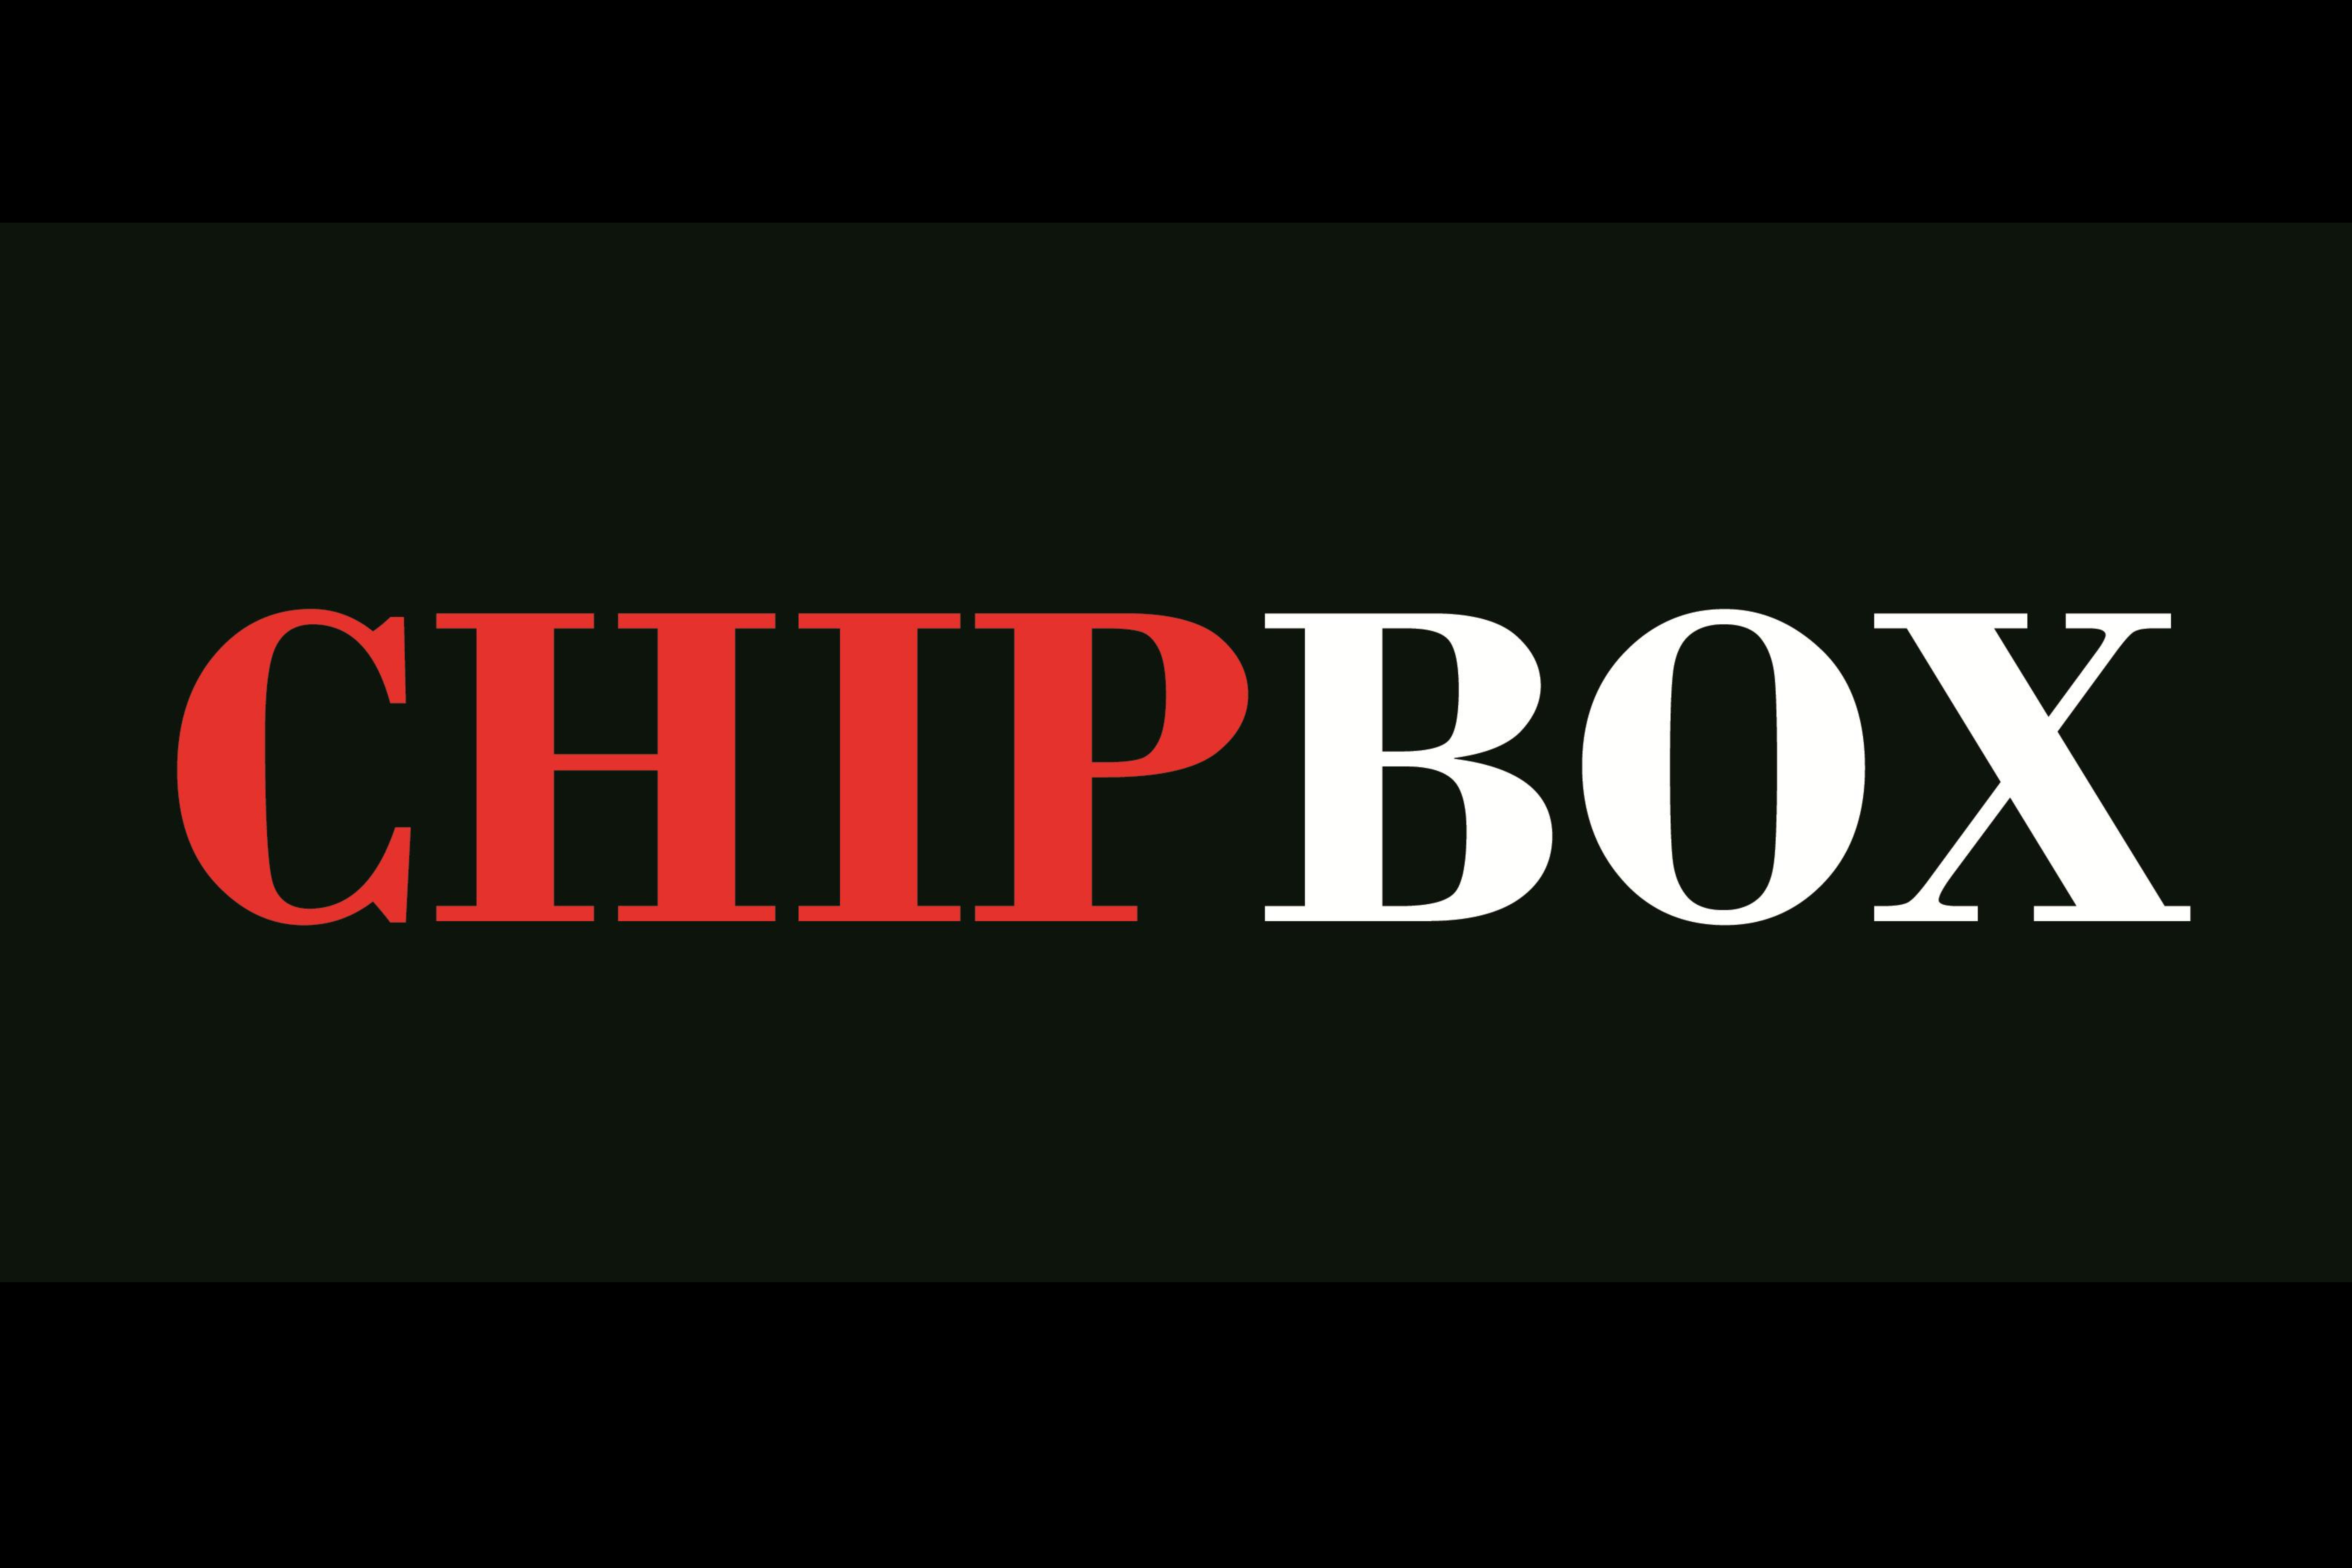 CHIPBOX